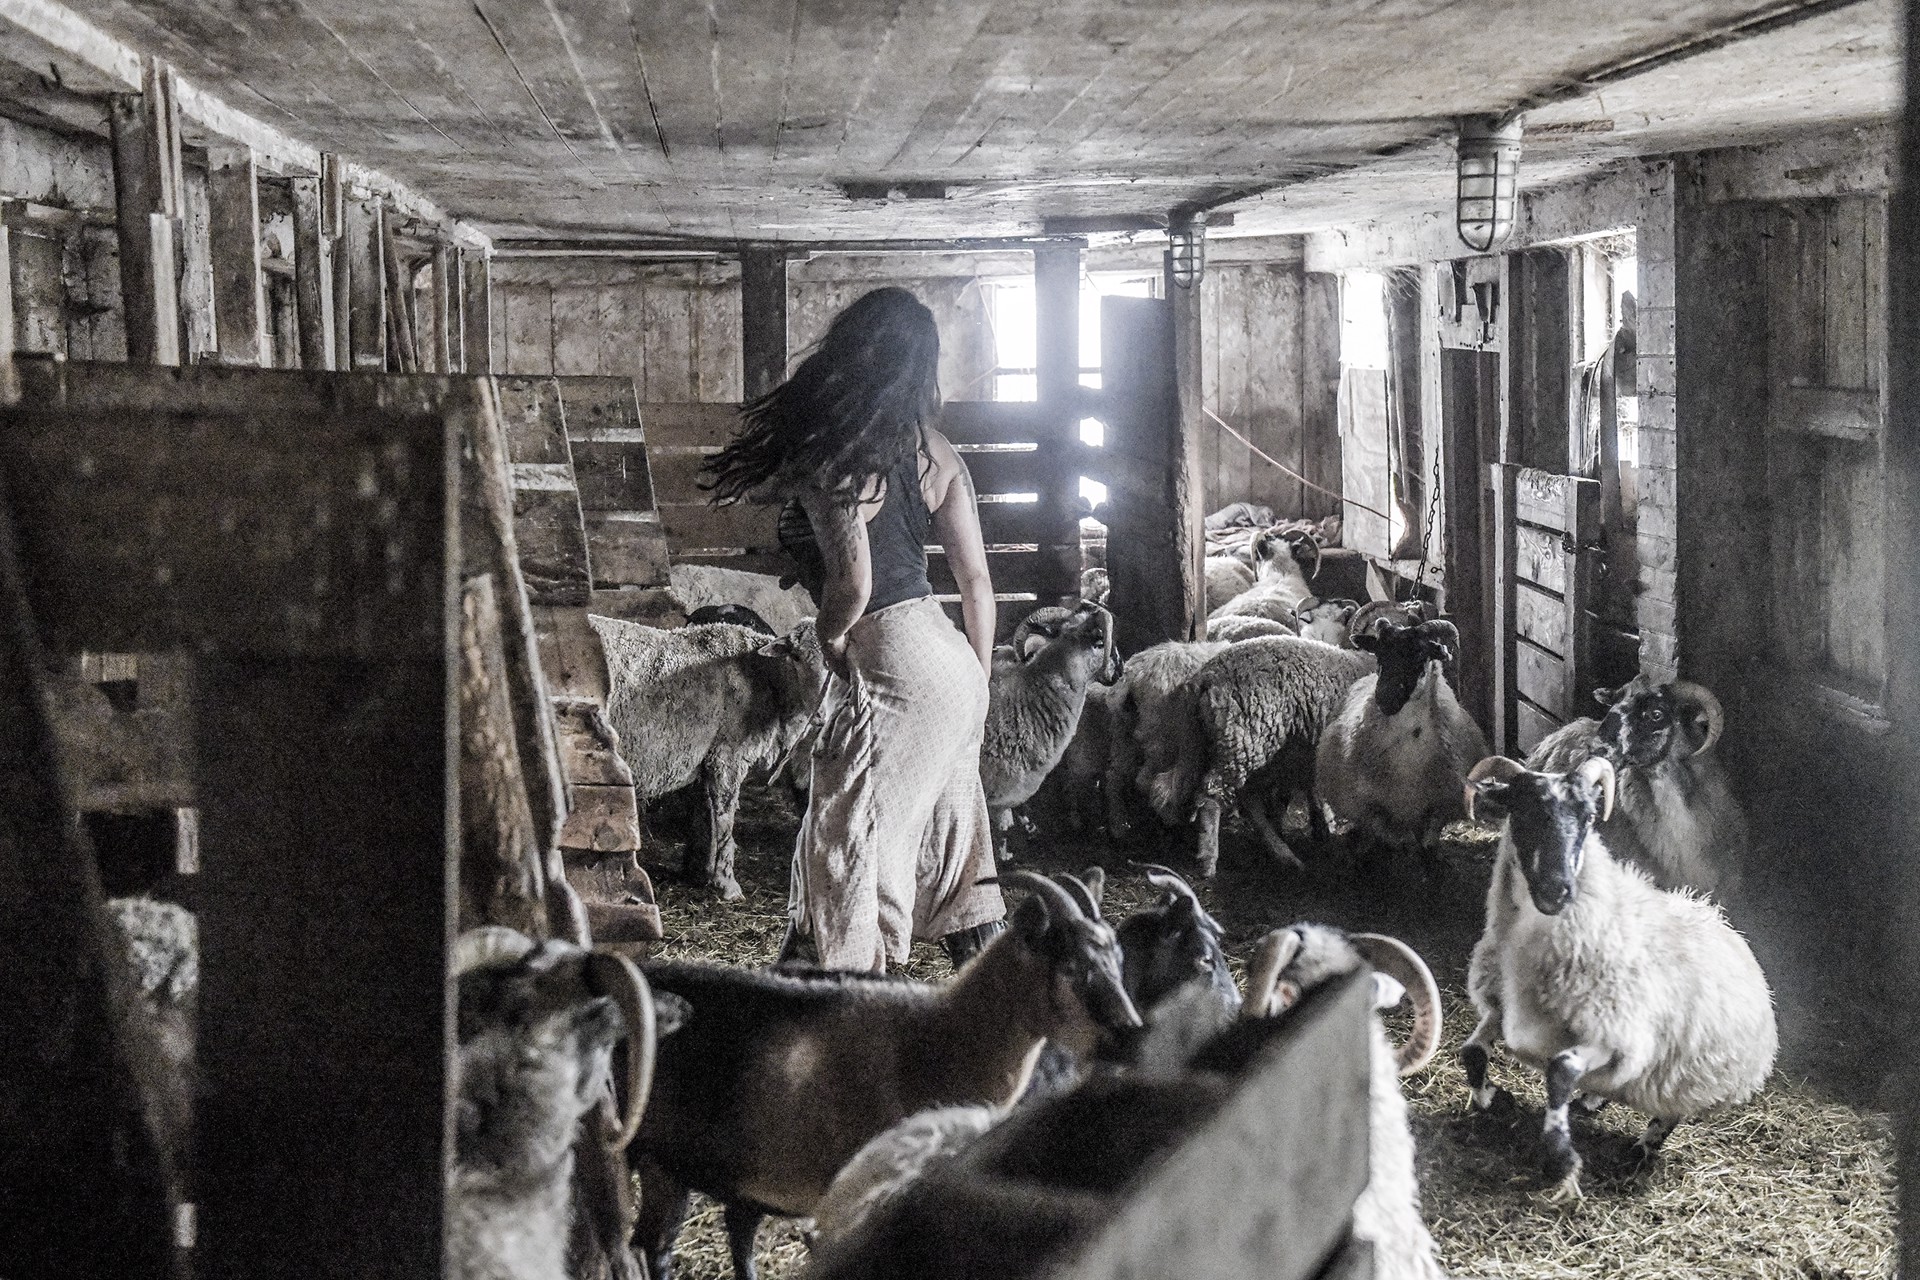 Women in Barn by Nina Fuller